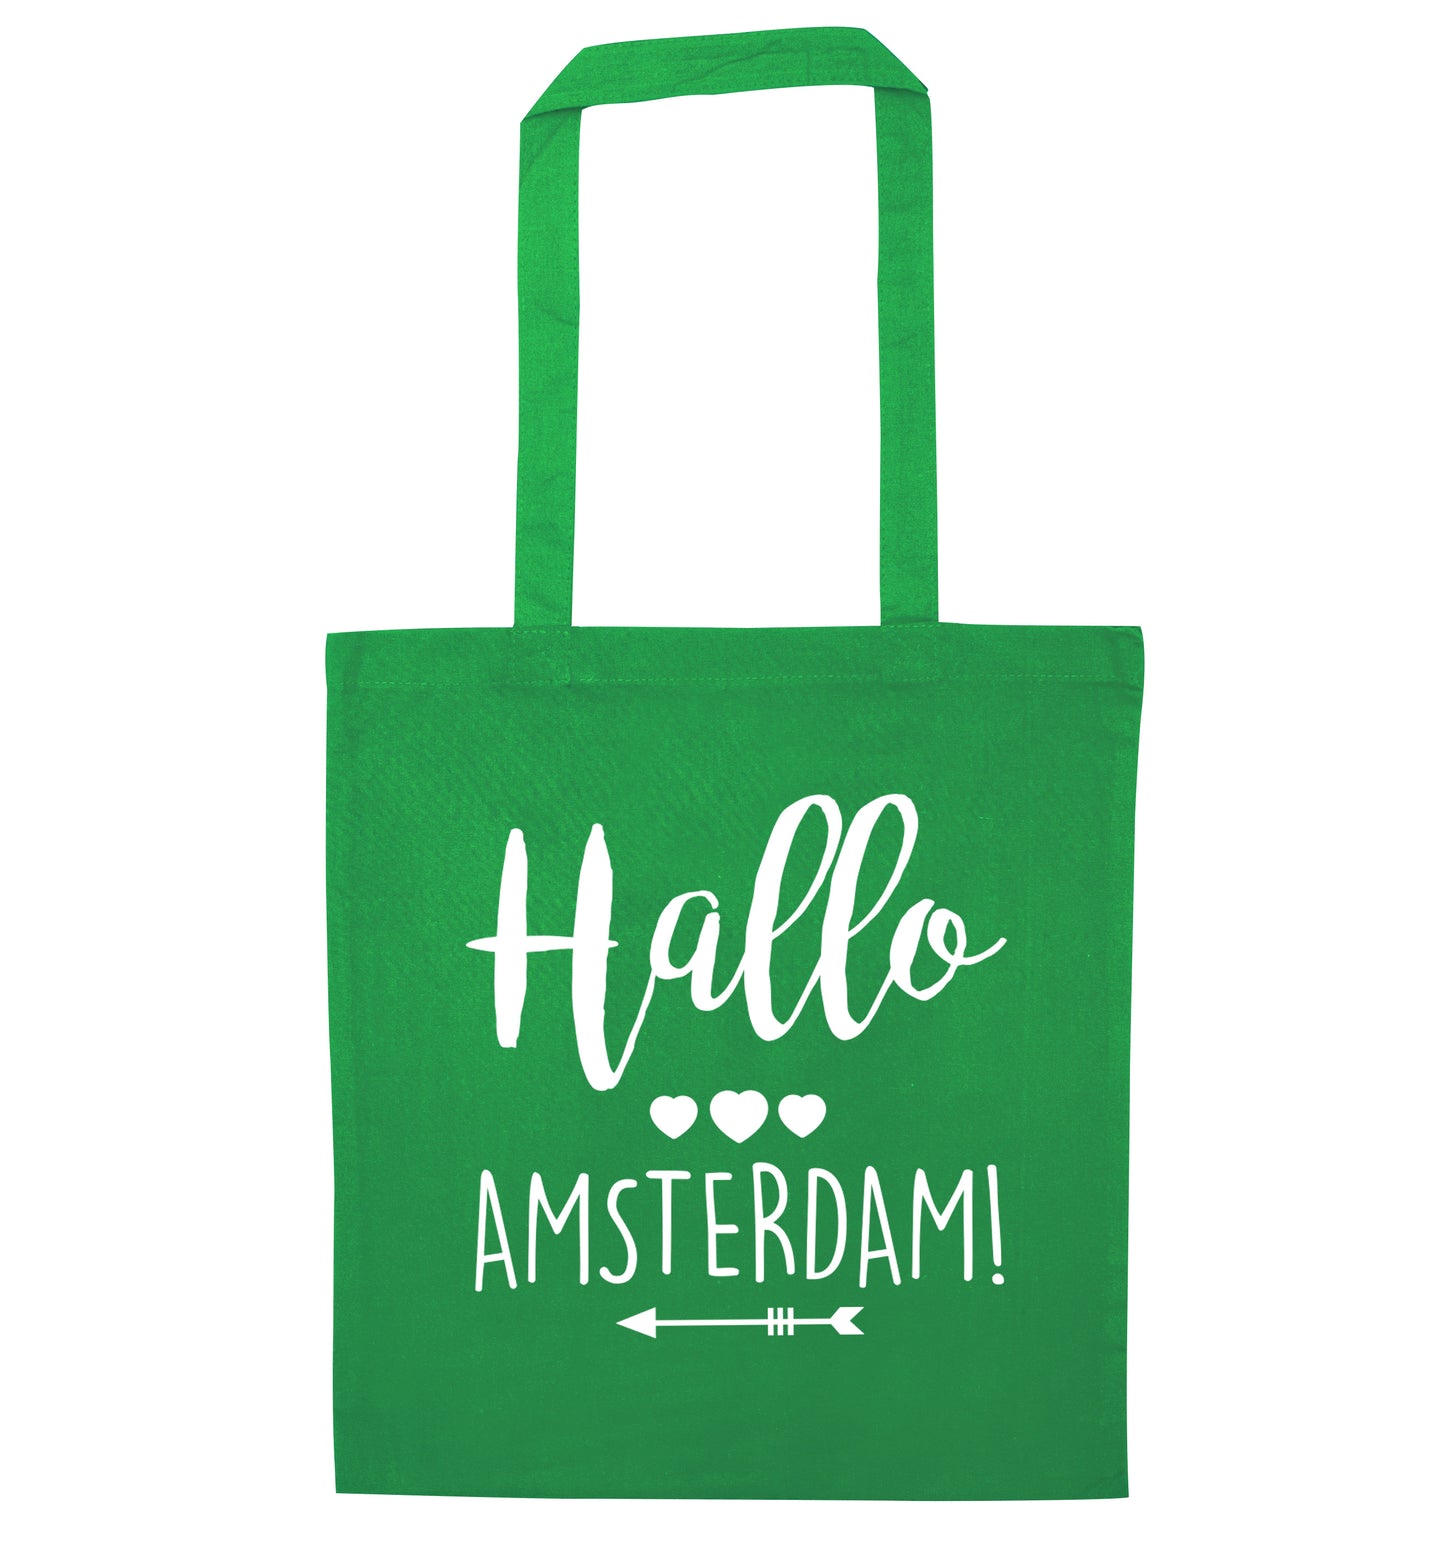 Hallo Amsterdam green tote bag